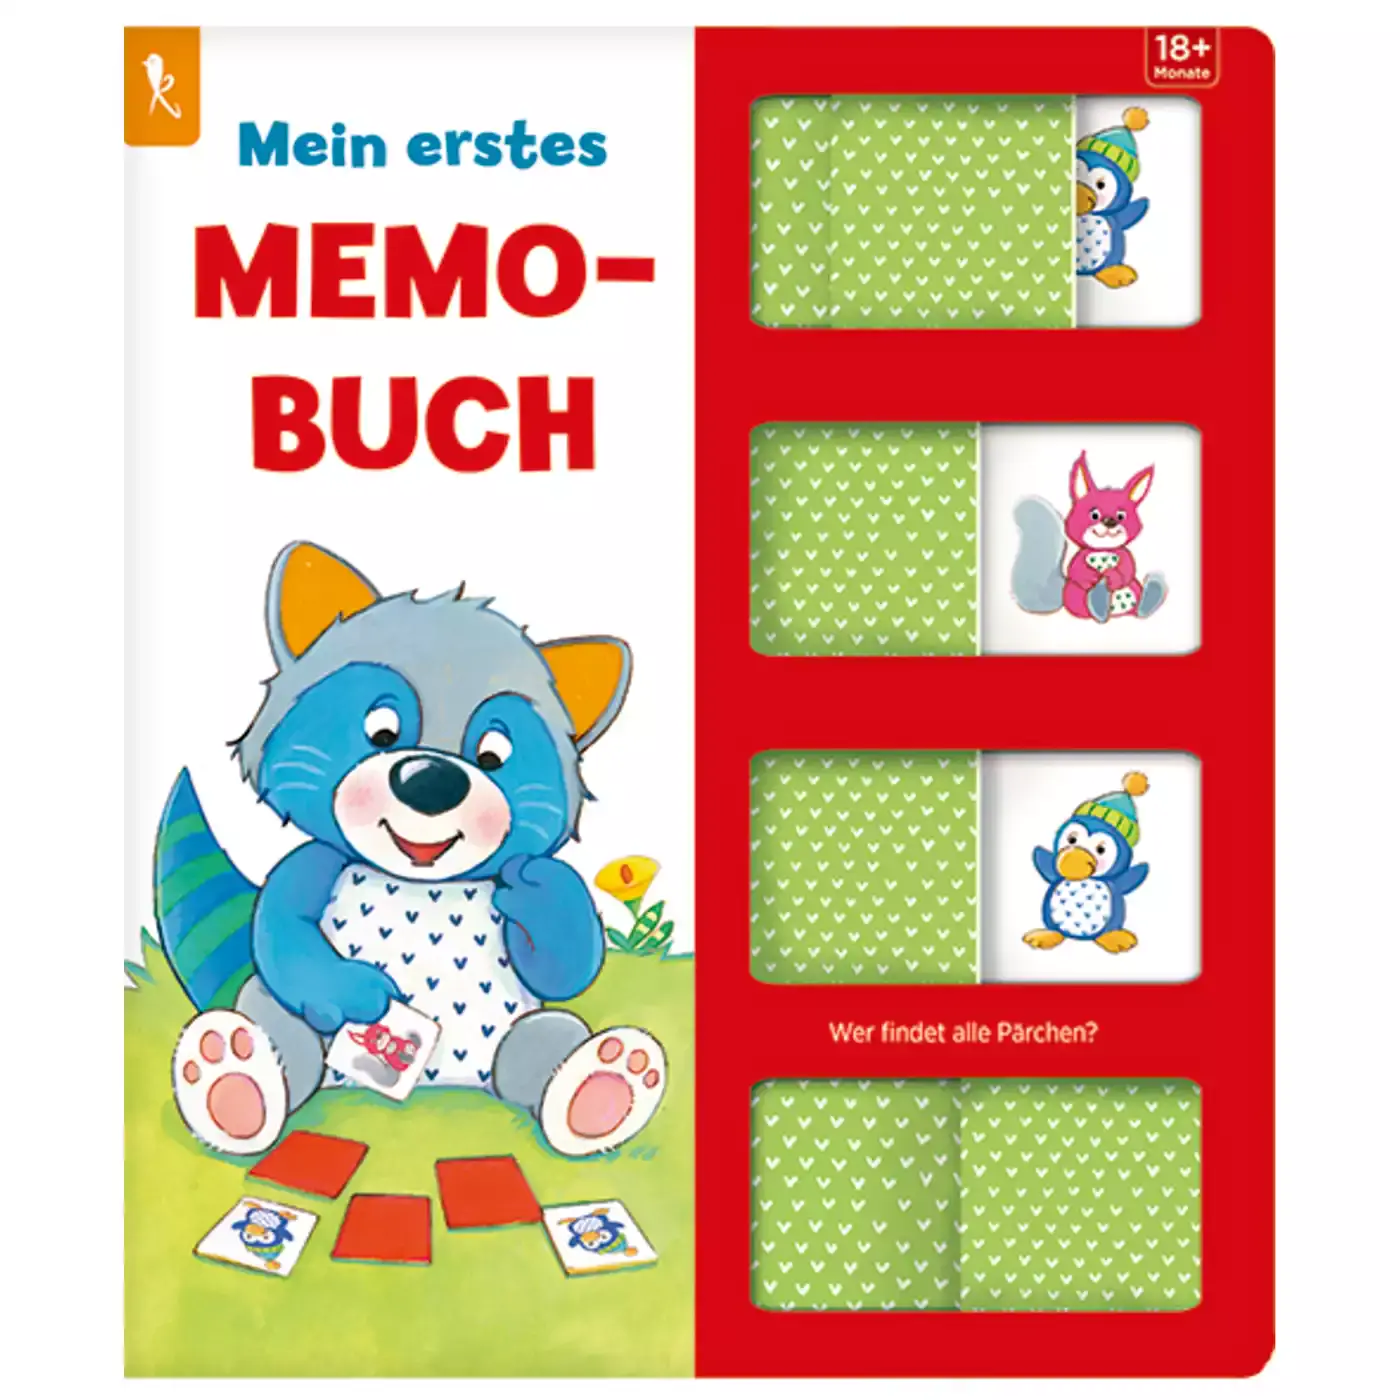 Mein erstes Memo-Buch - Wer findet alle Pärchen? COPPENRATH 2000577835300 1